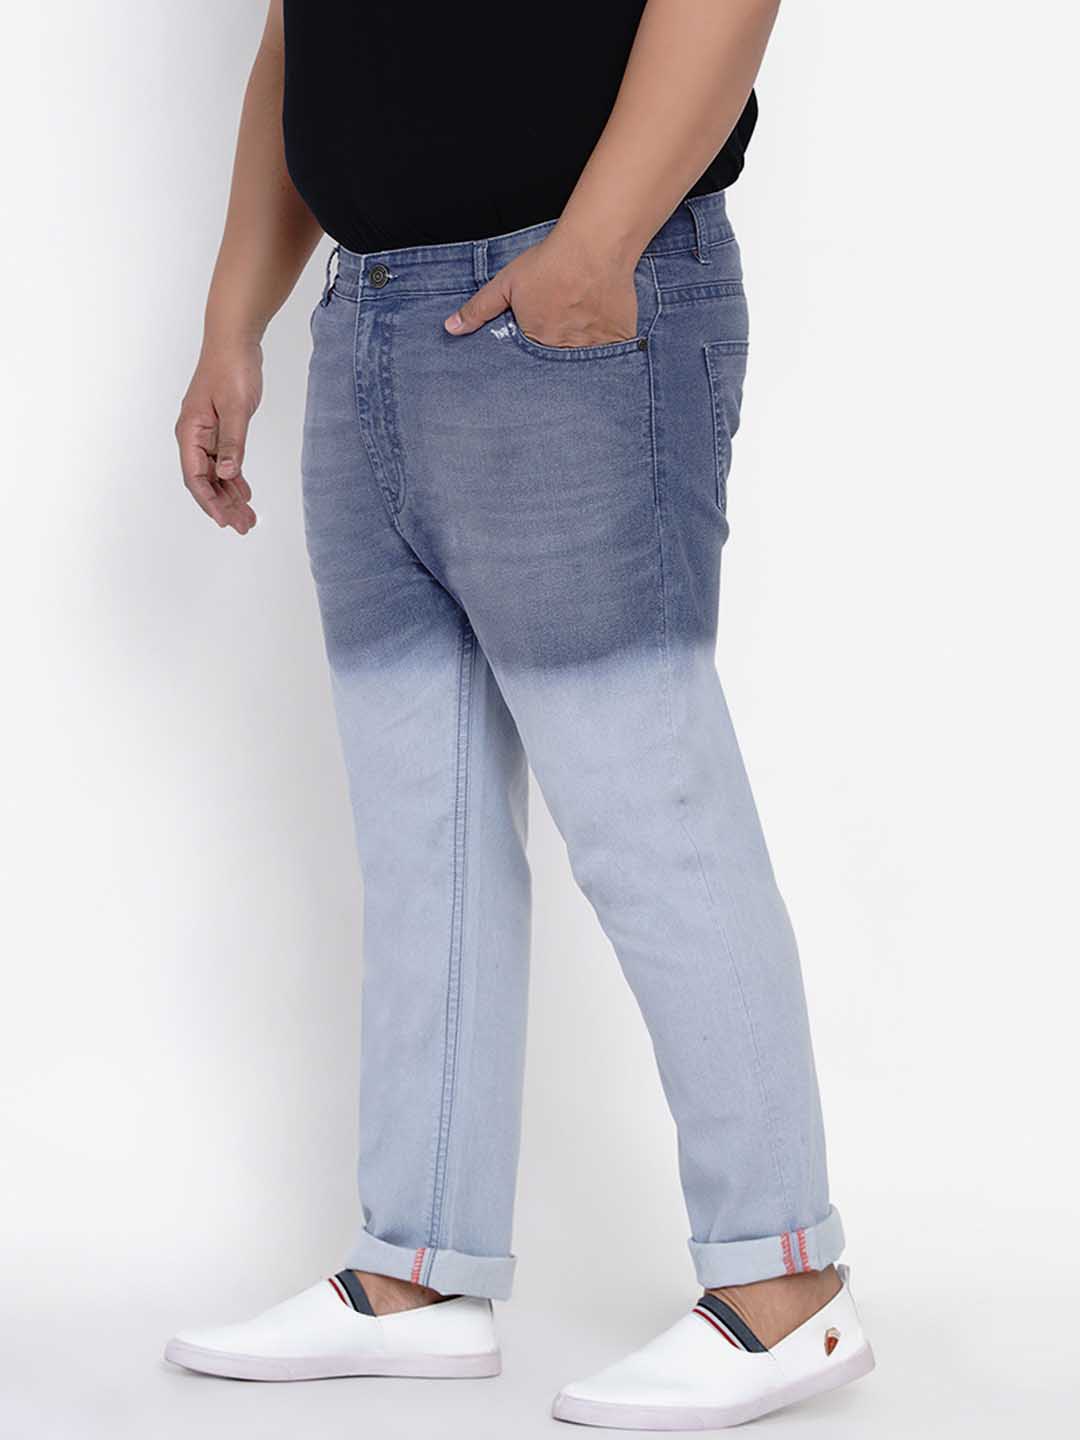 bottomwear/jeans/JPJ6004/jpj6004-3.jpg